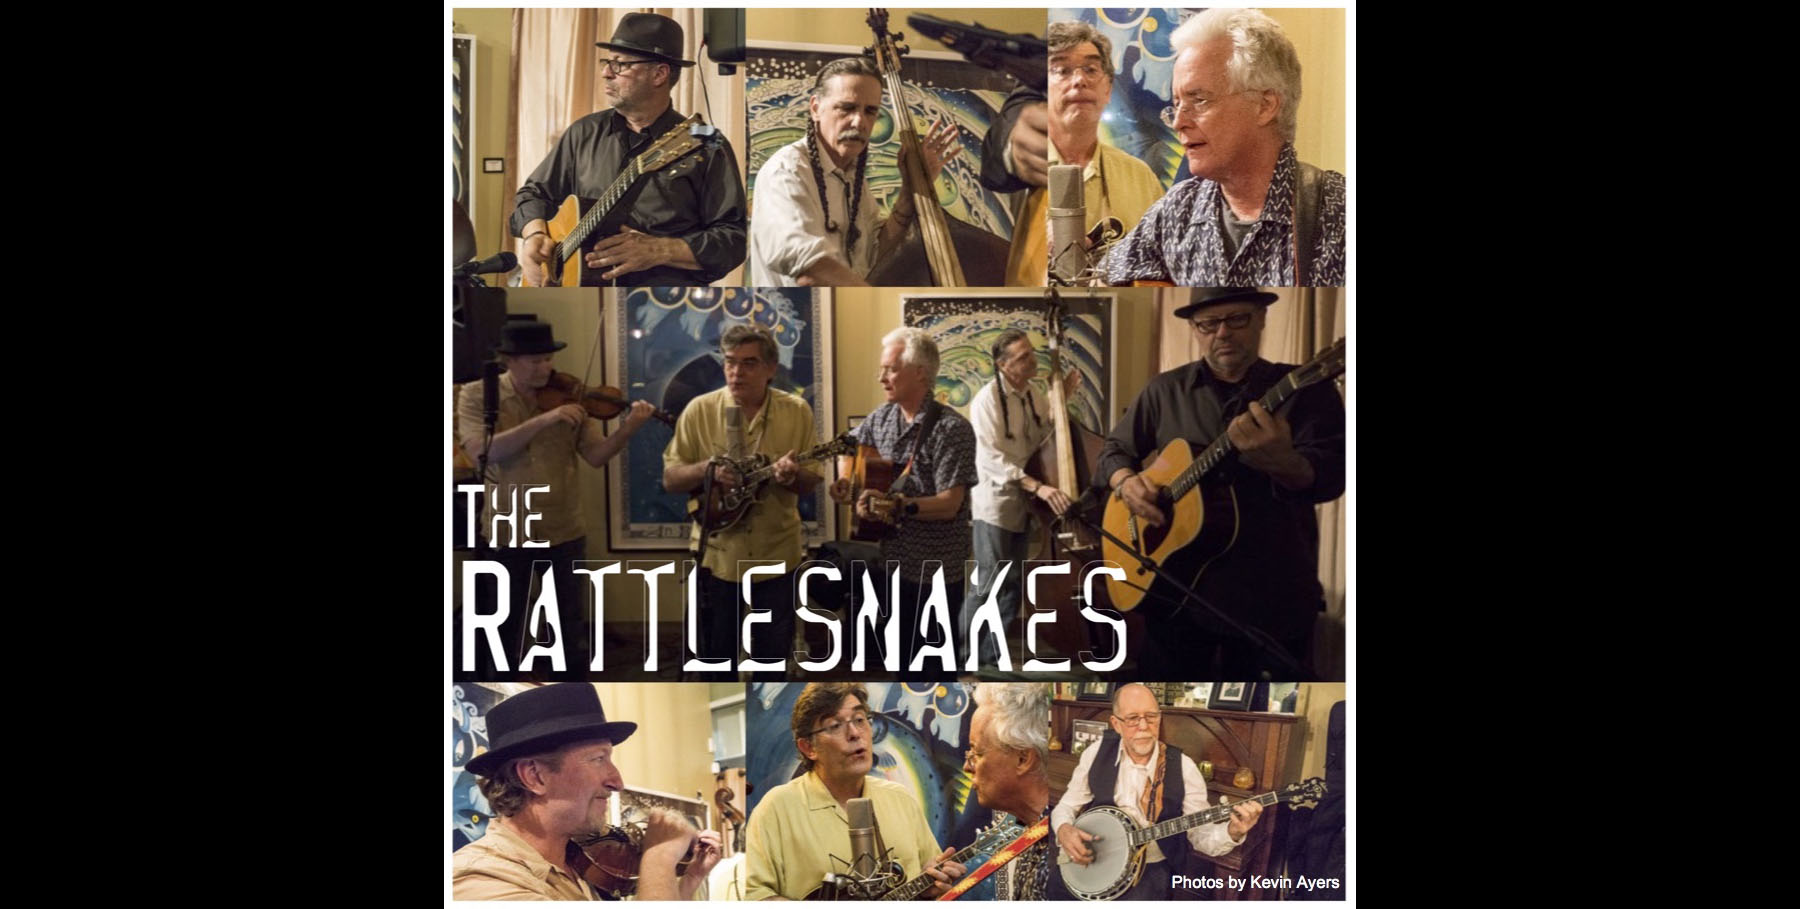 Rattlesnakes Poster.jpg